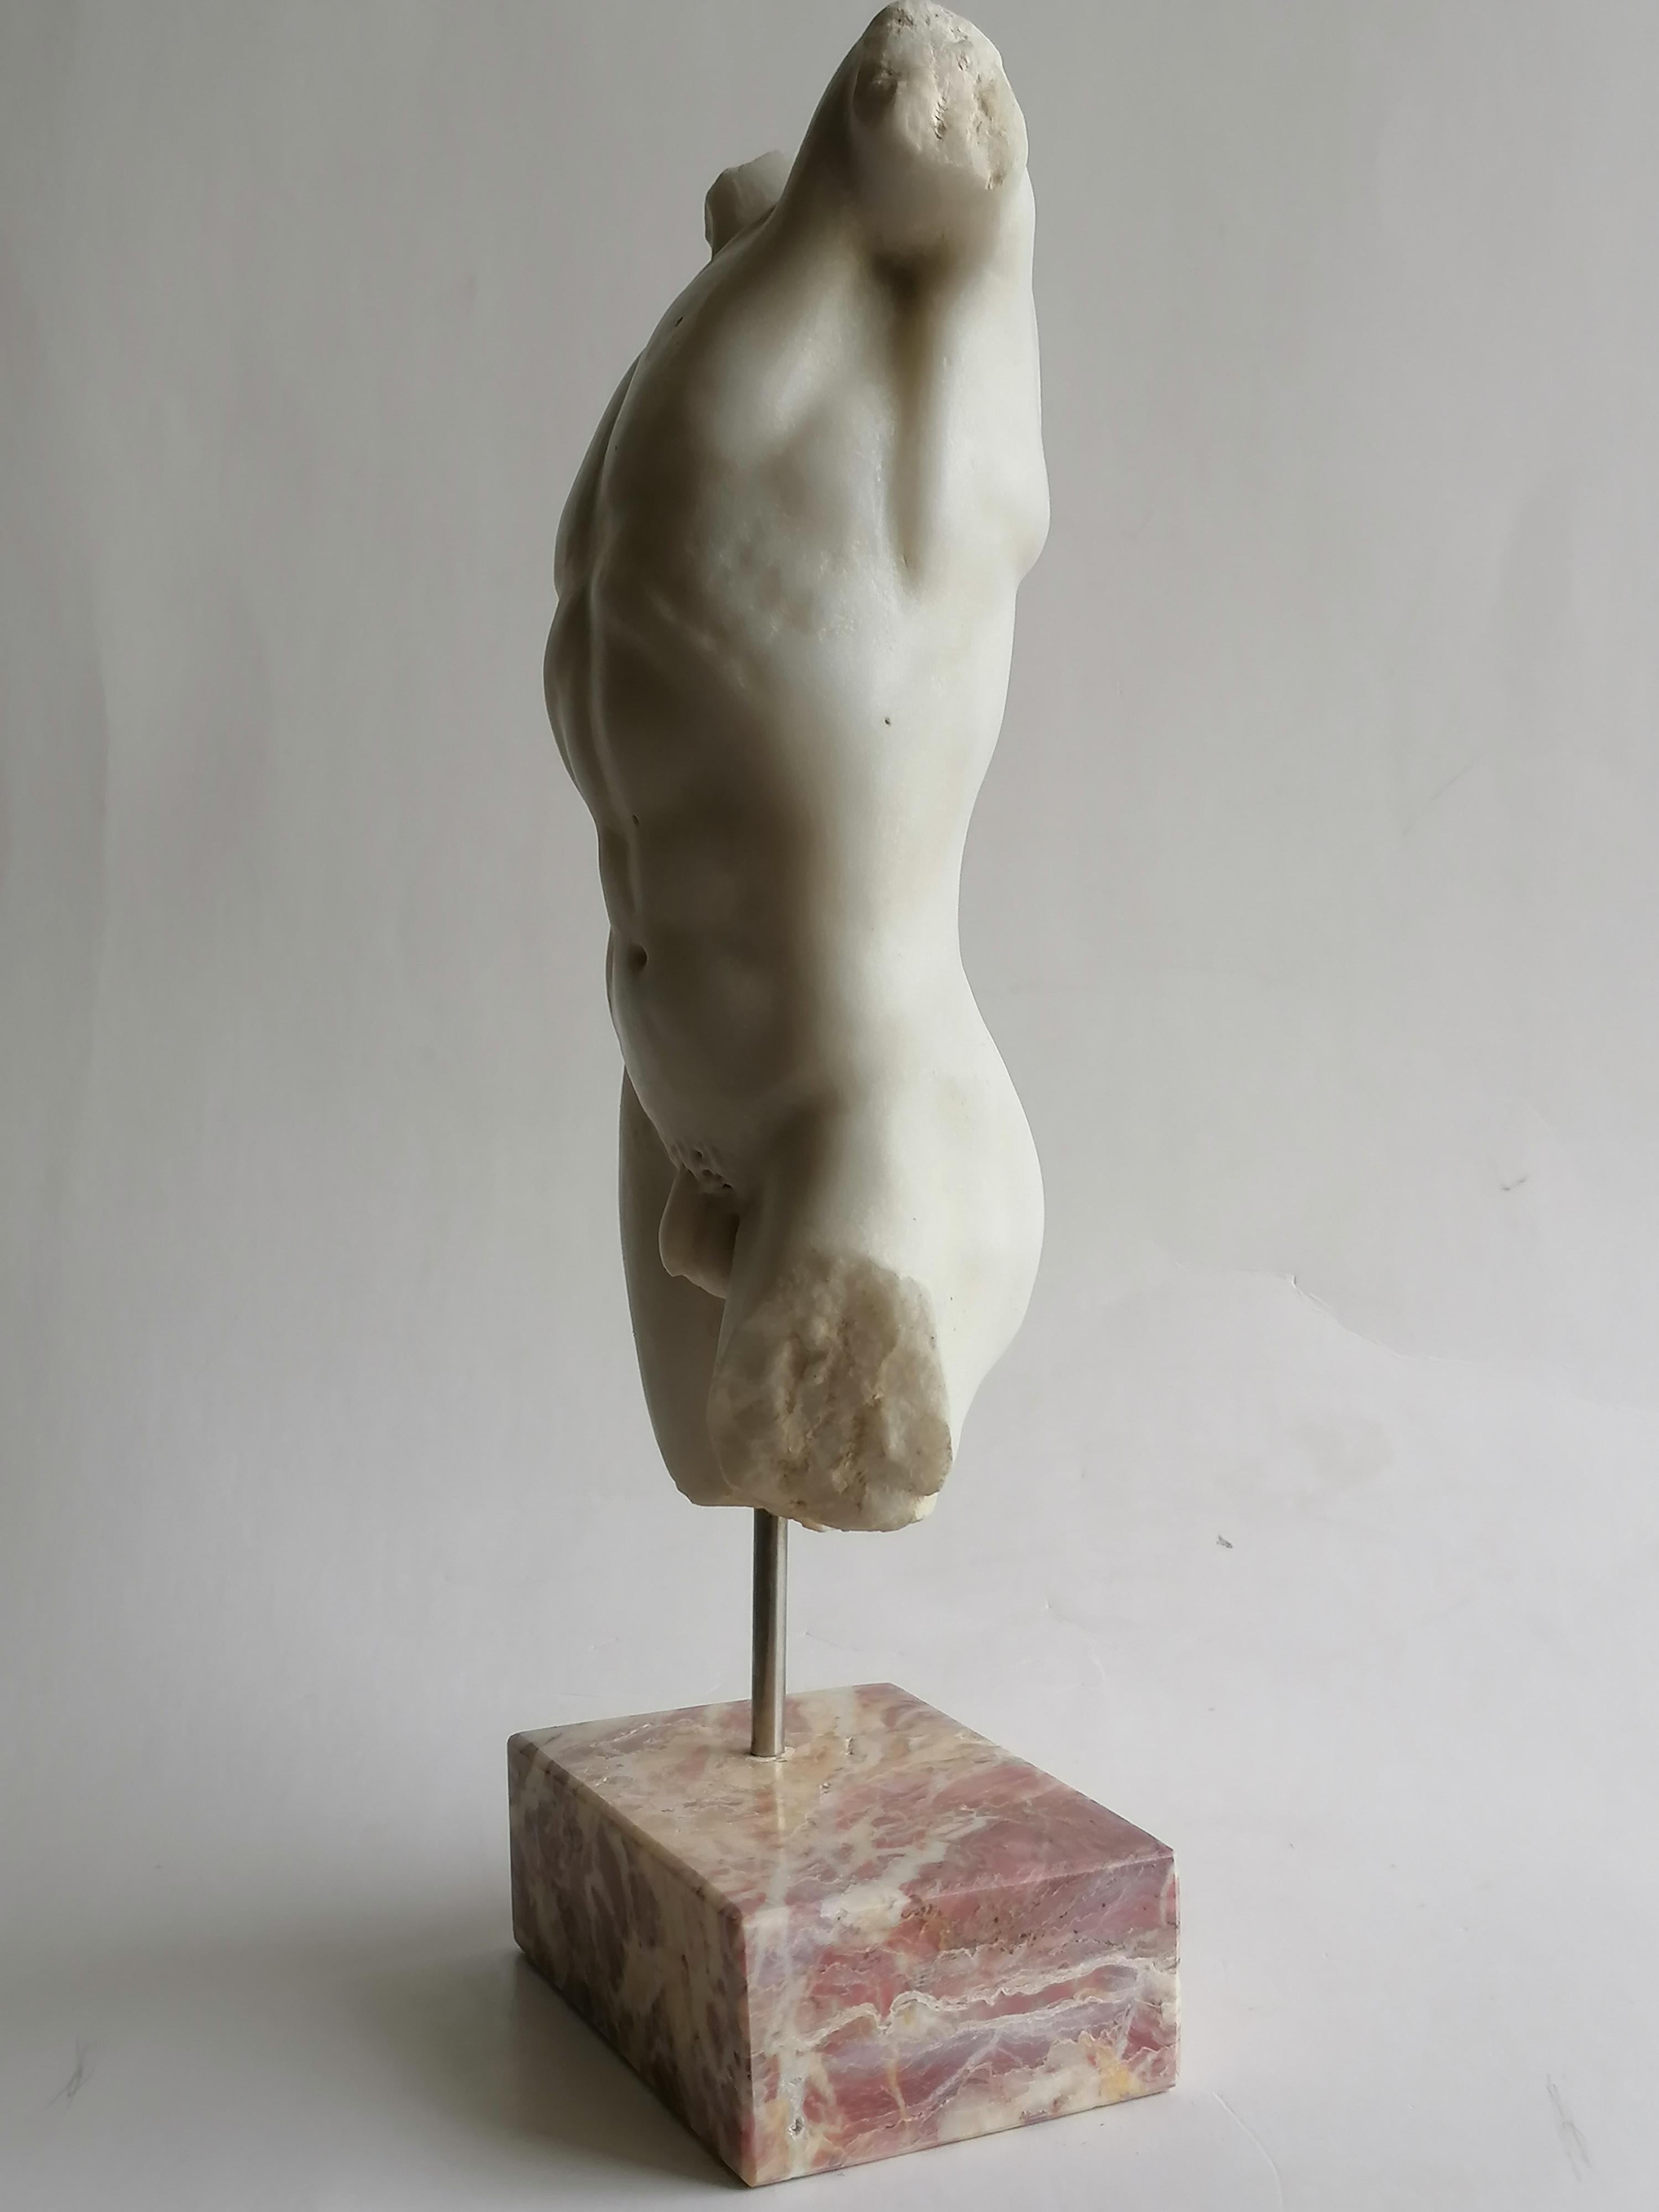 Hand-Crafted Torso maschile classico scolpito su marmo bianco di Carrara